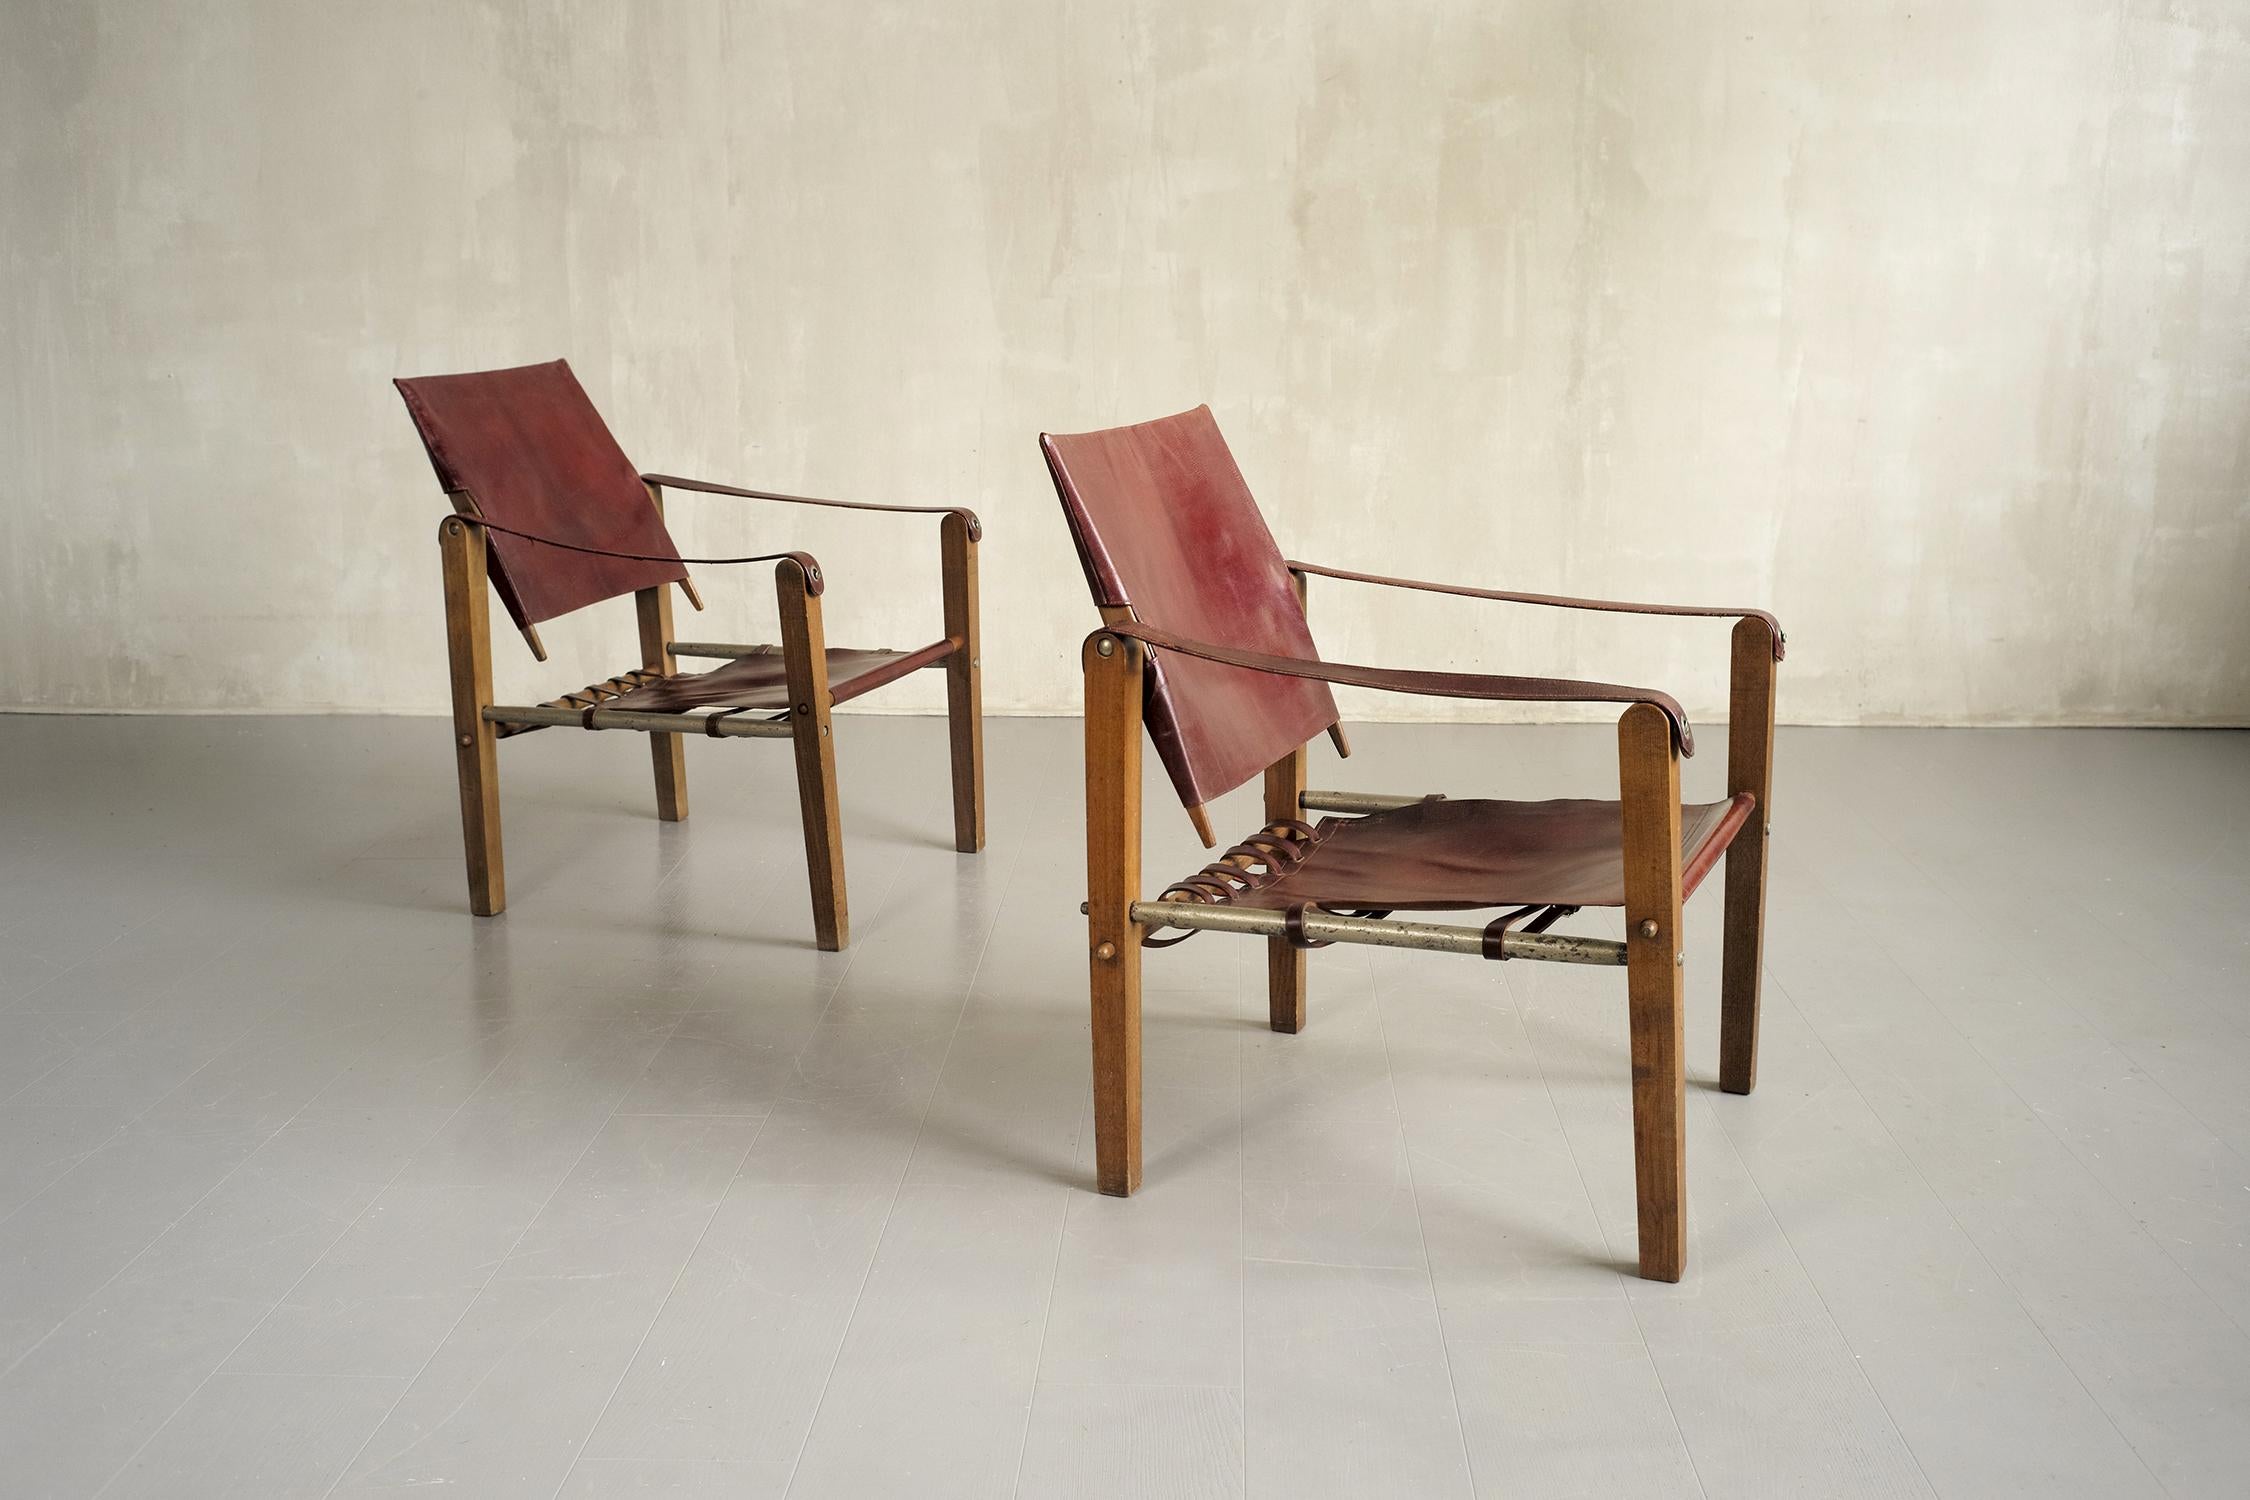 Exceptionnel ensemble de 4 fauteuils 'Démontables' produits par la Sellerie Bouix, Tunis 1920.
Dans cette version 